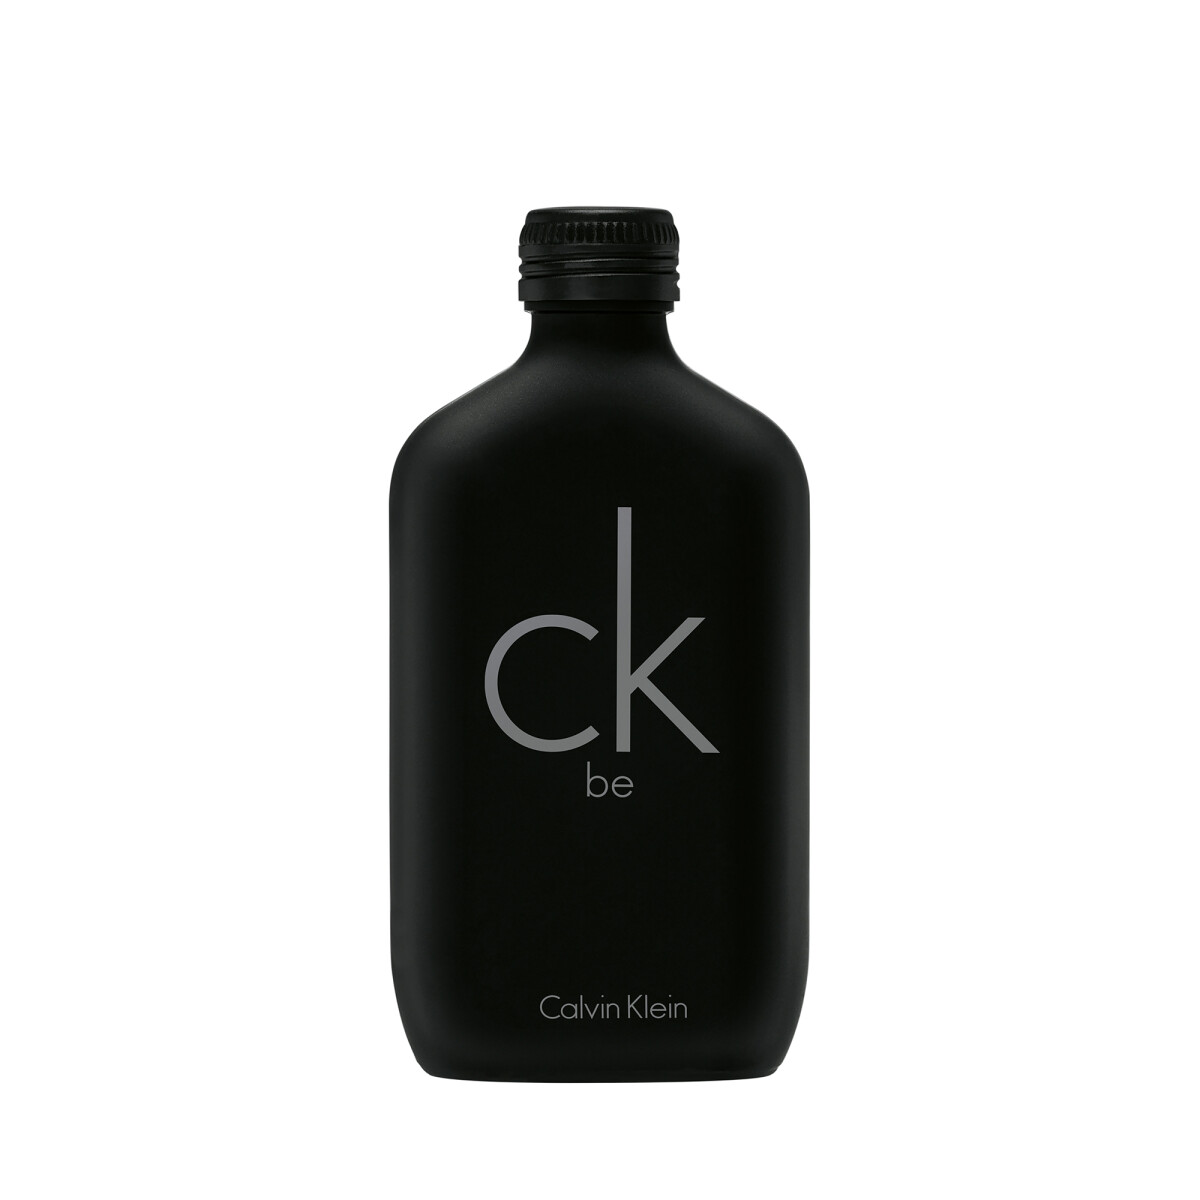 Perfume Calvin Klein Be Edt 100 ml 